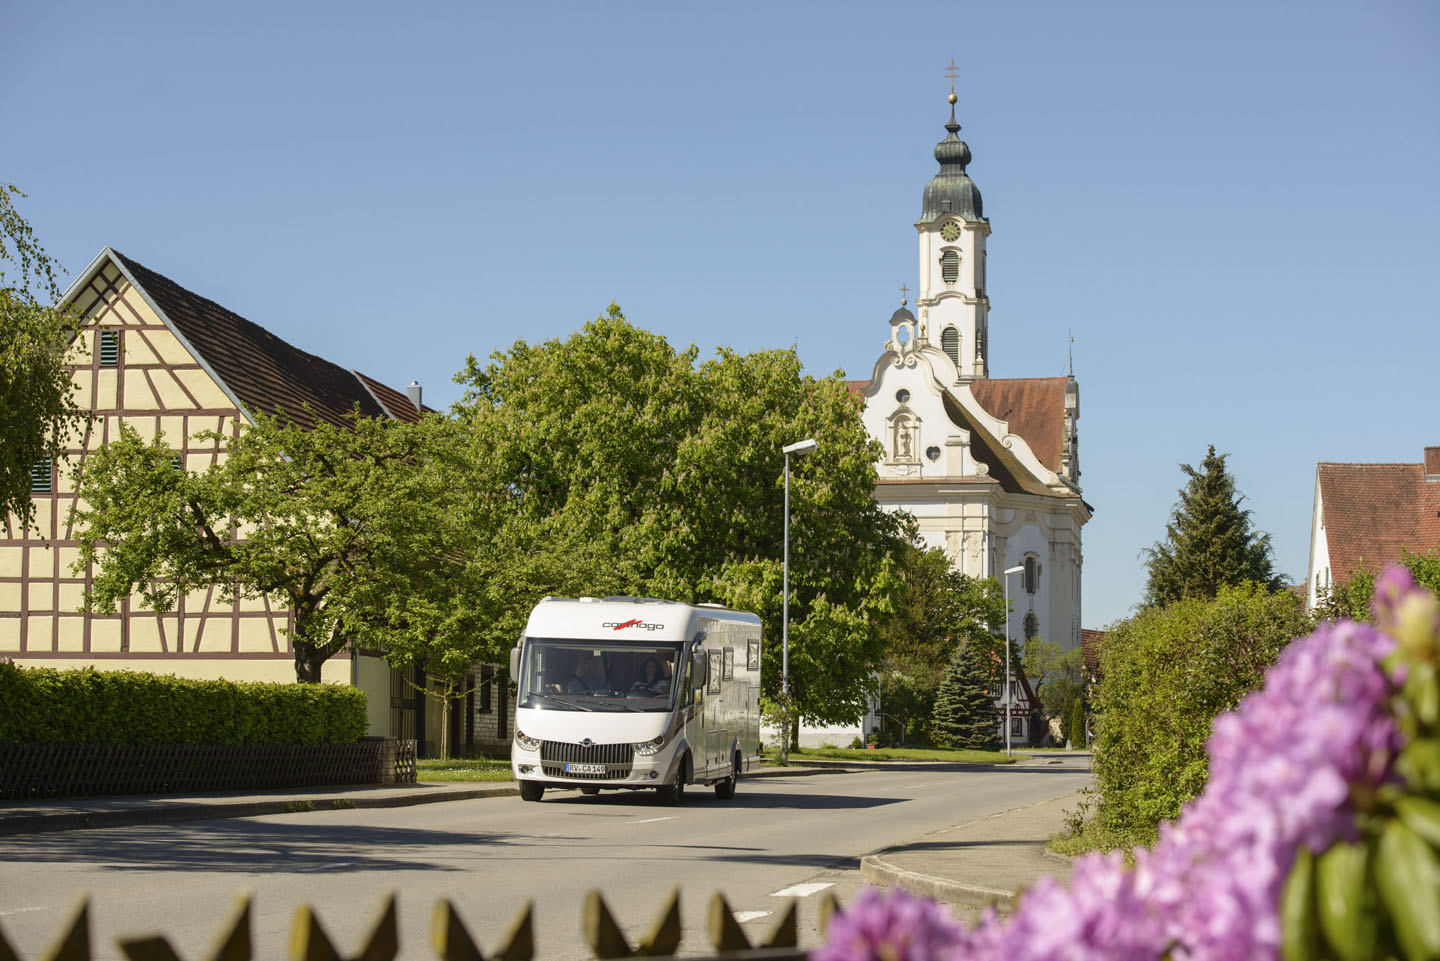 Reisemobil in Steinhausen, im Hintergrund eine barocke Kirche